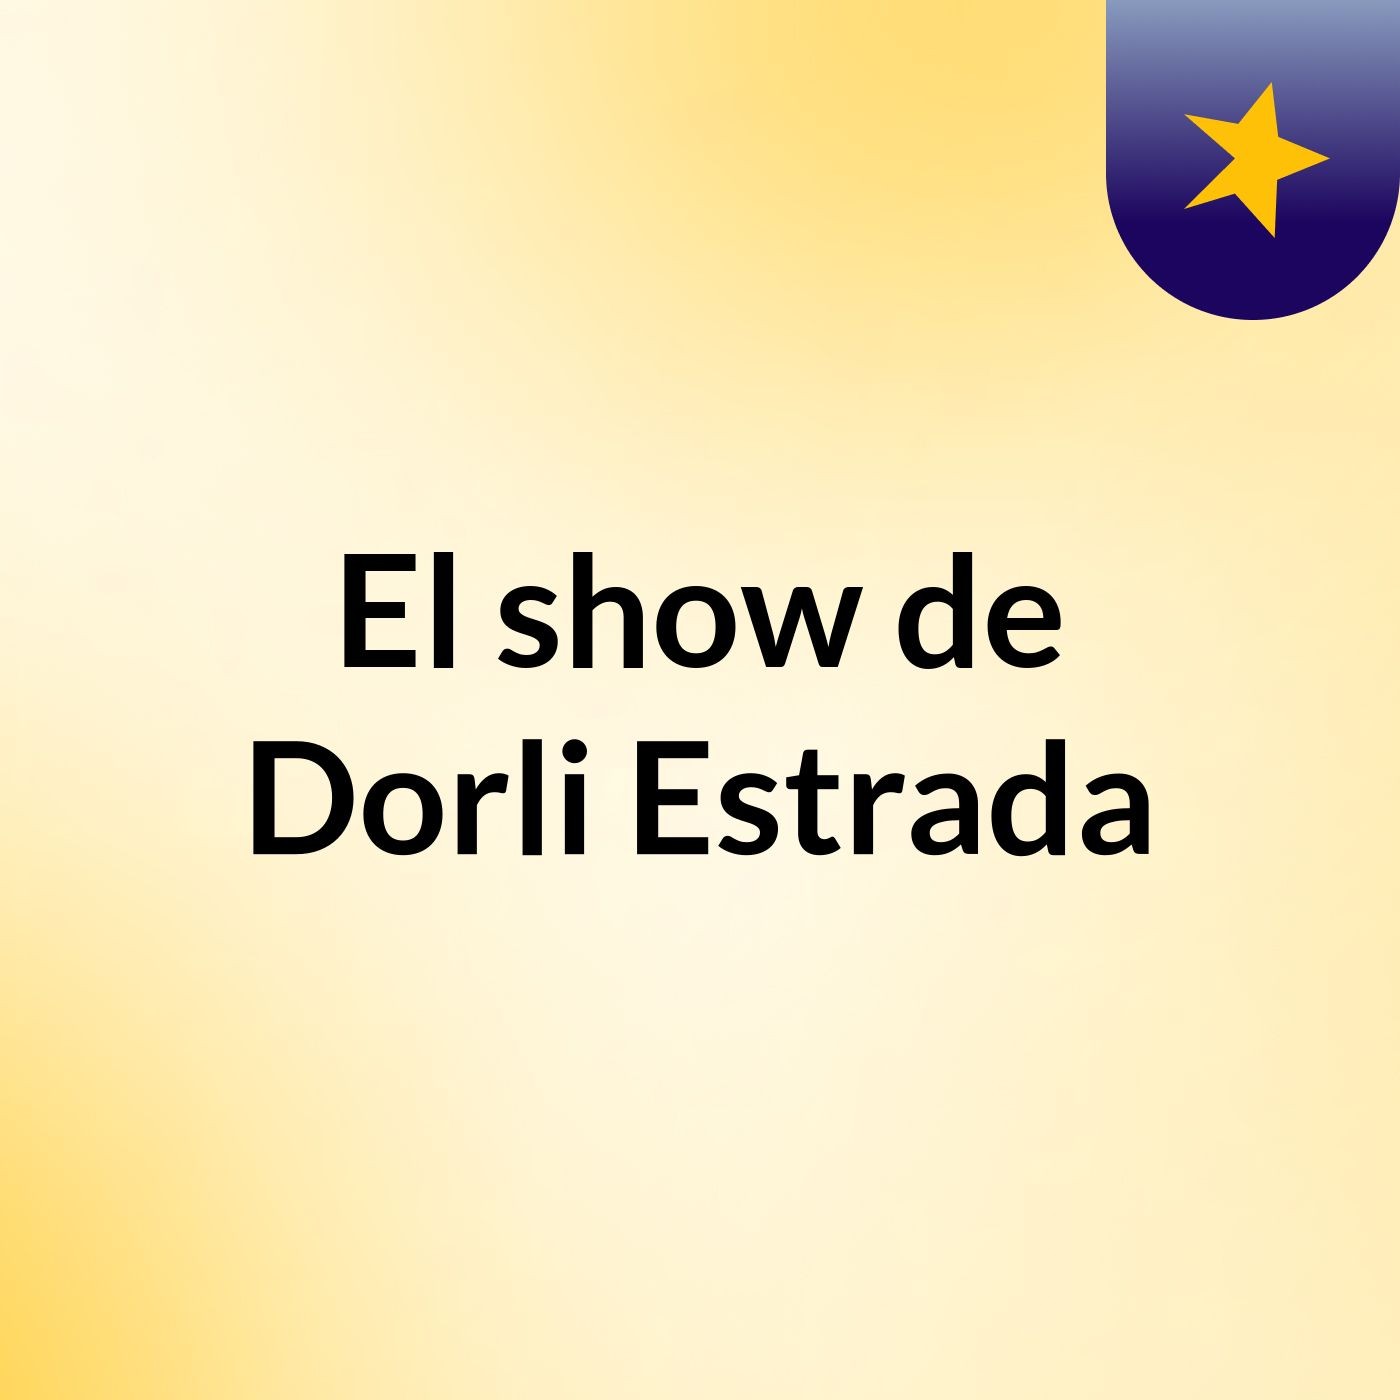 Episodio 3 - El show de Dorli Estrada